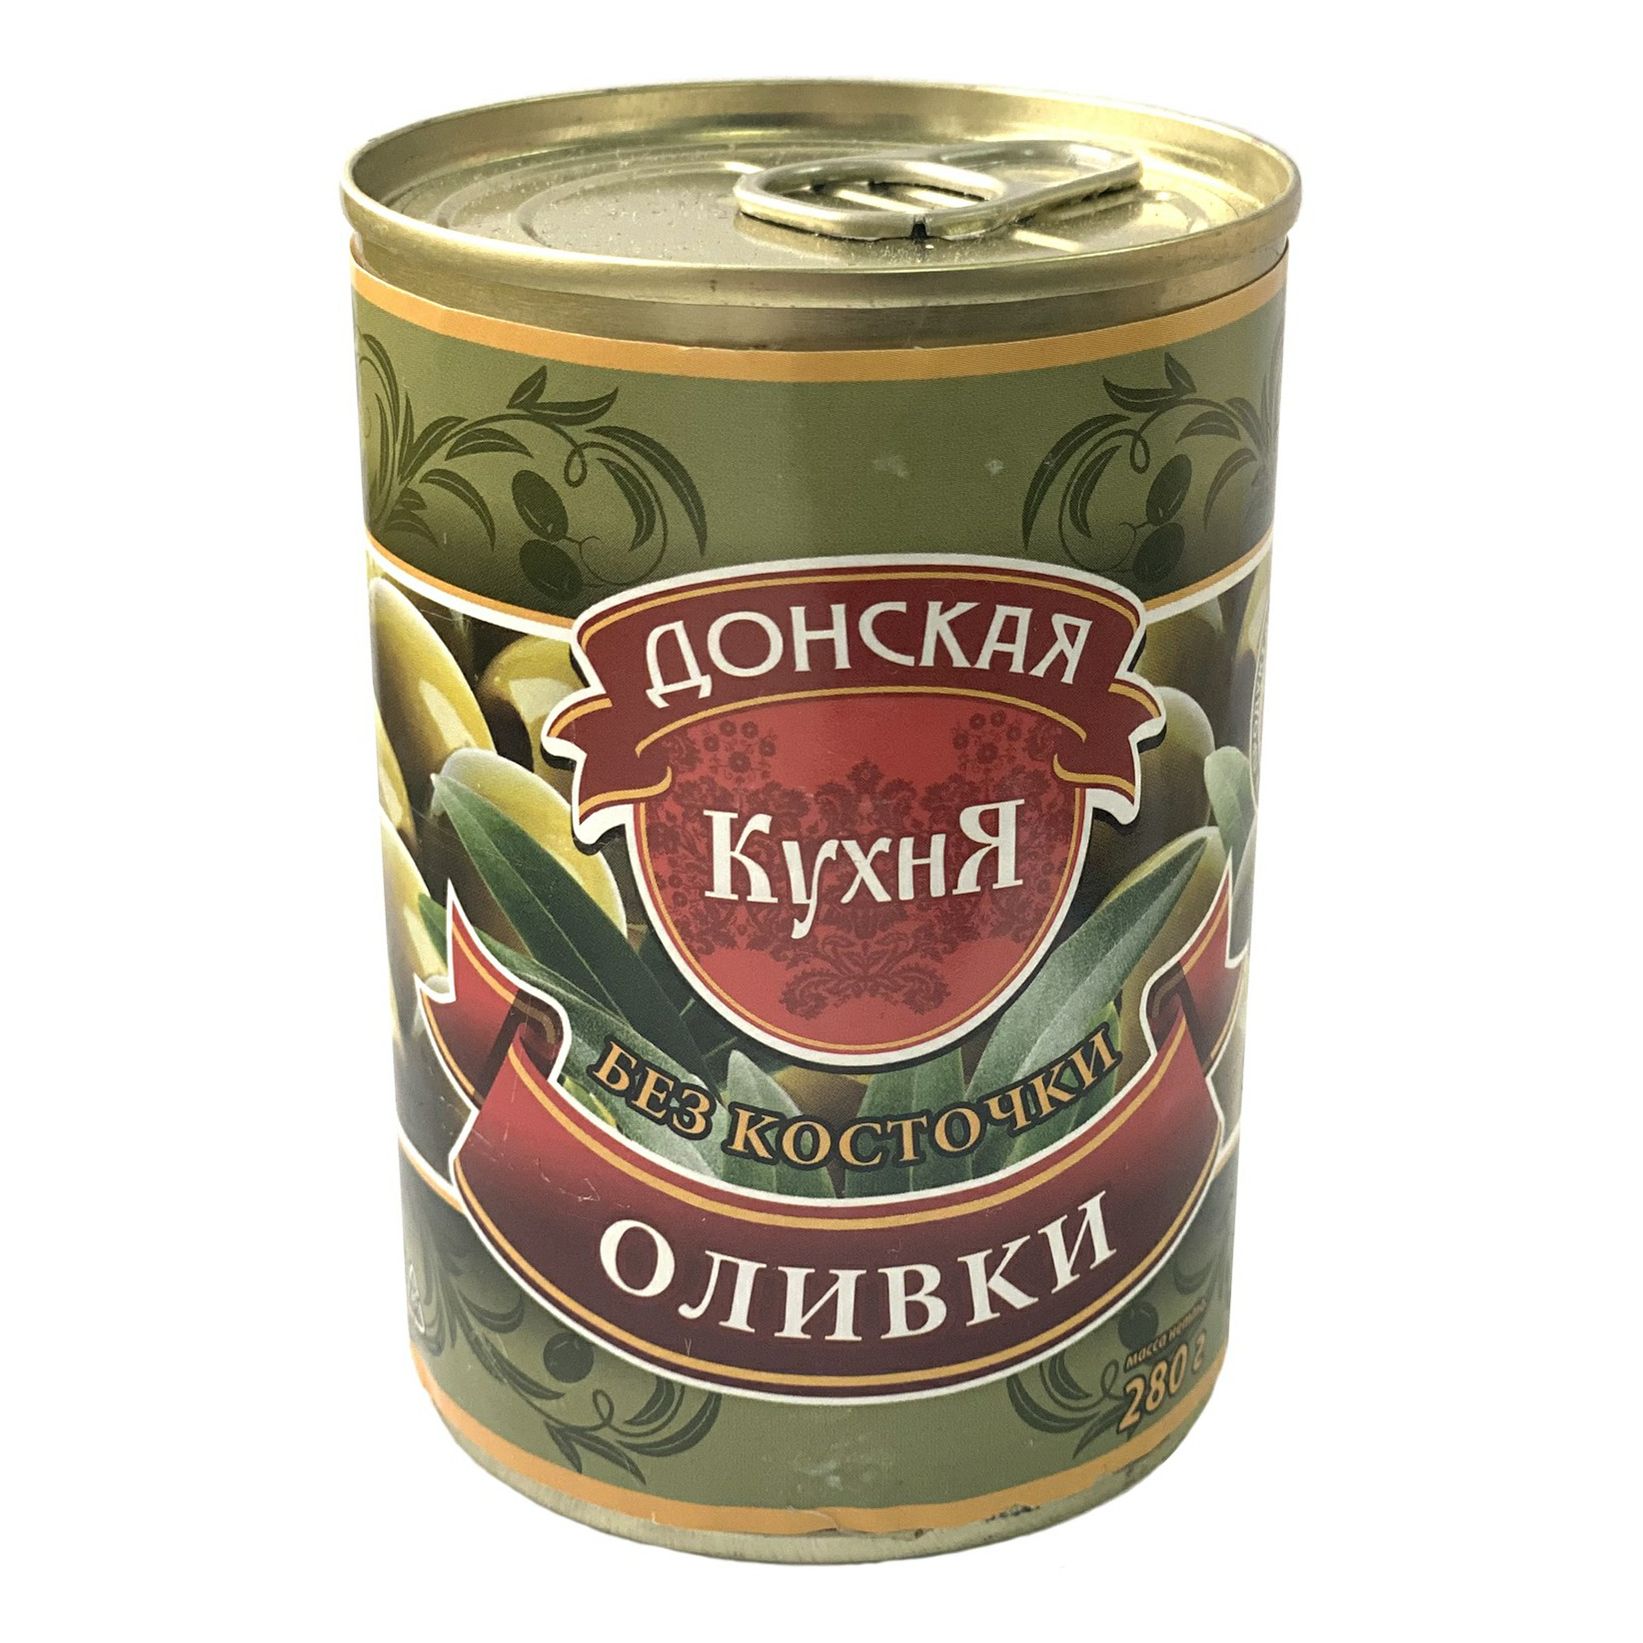 Оливки Донская Кухня зеленые средние с косточкой 280 г